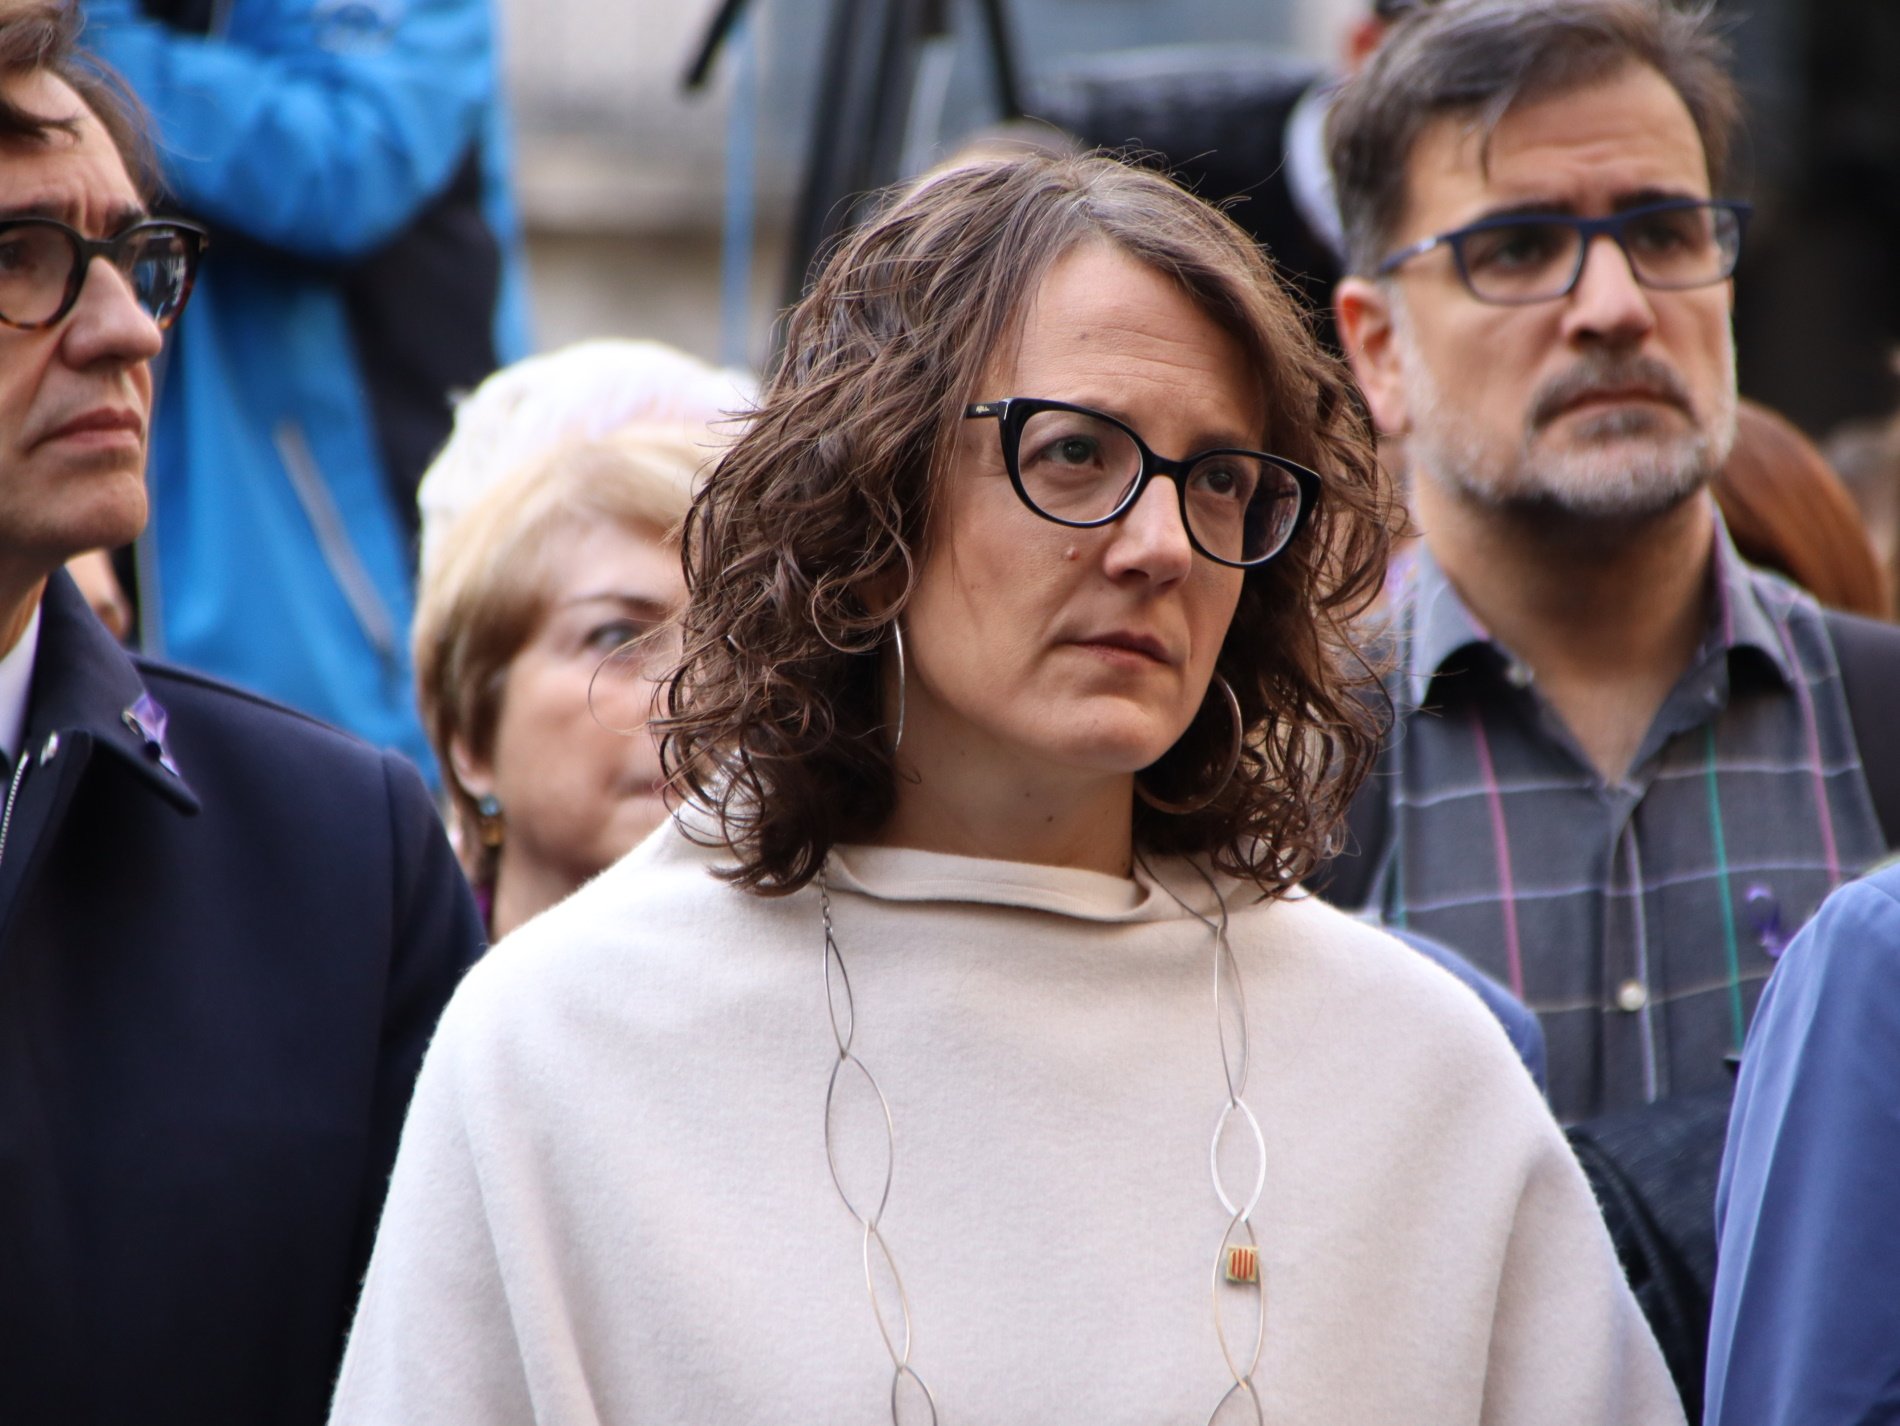 La consellera Tània Verge anima a Pedro Sánchez a educar a sus amigos "incómodos" con el feminismo